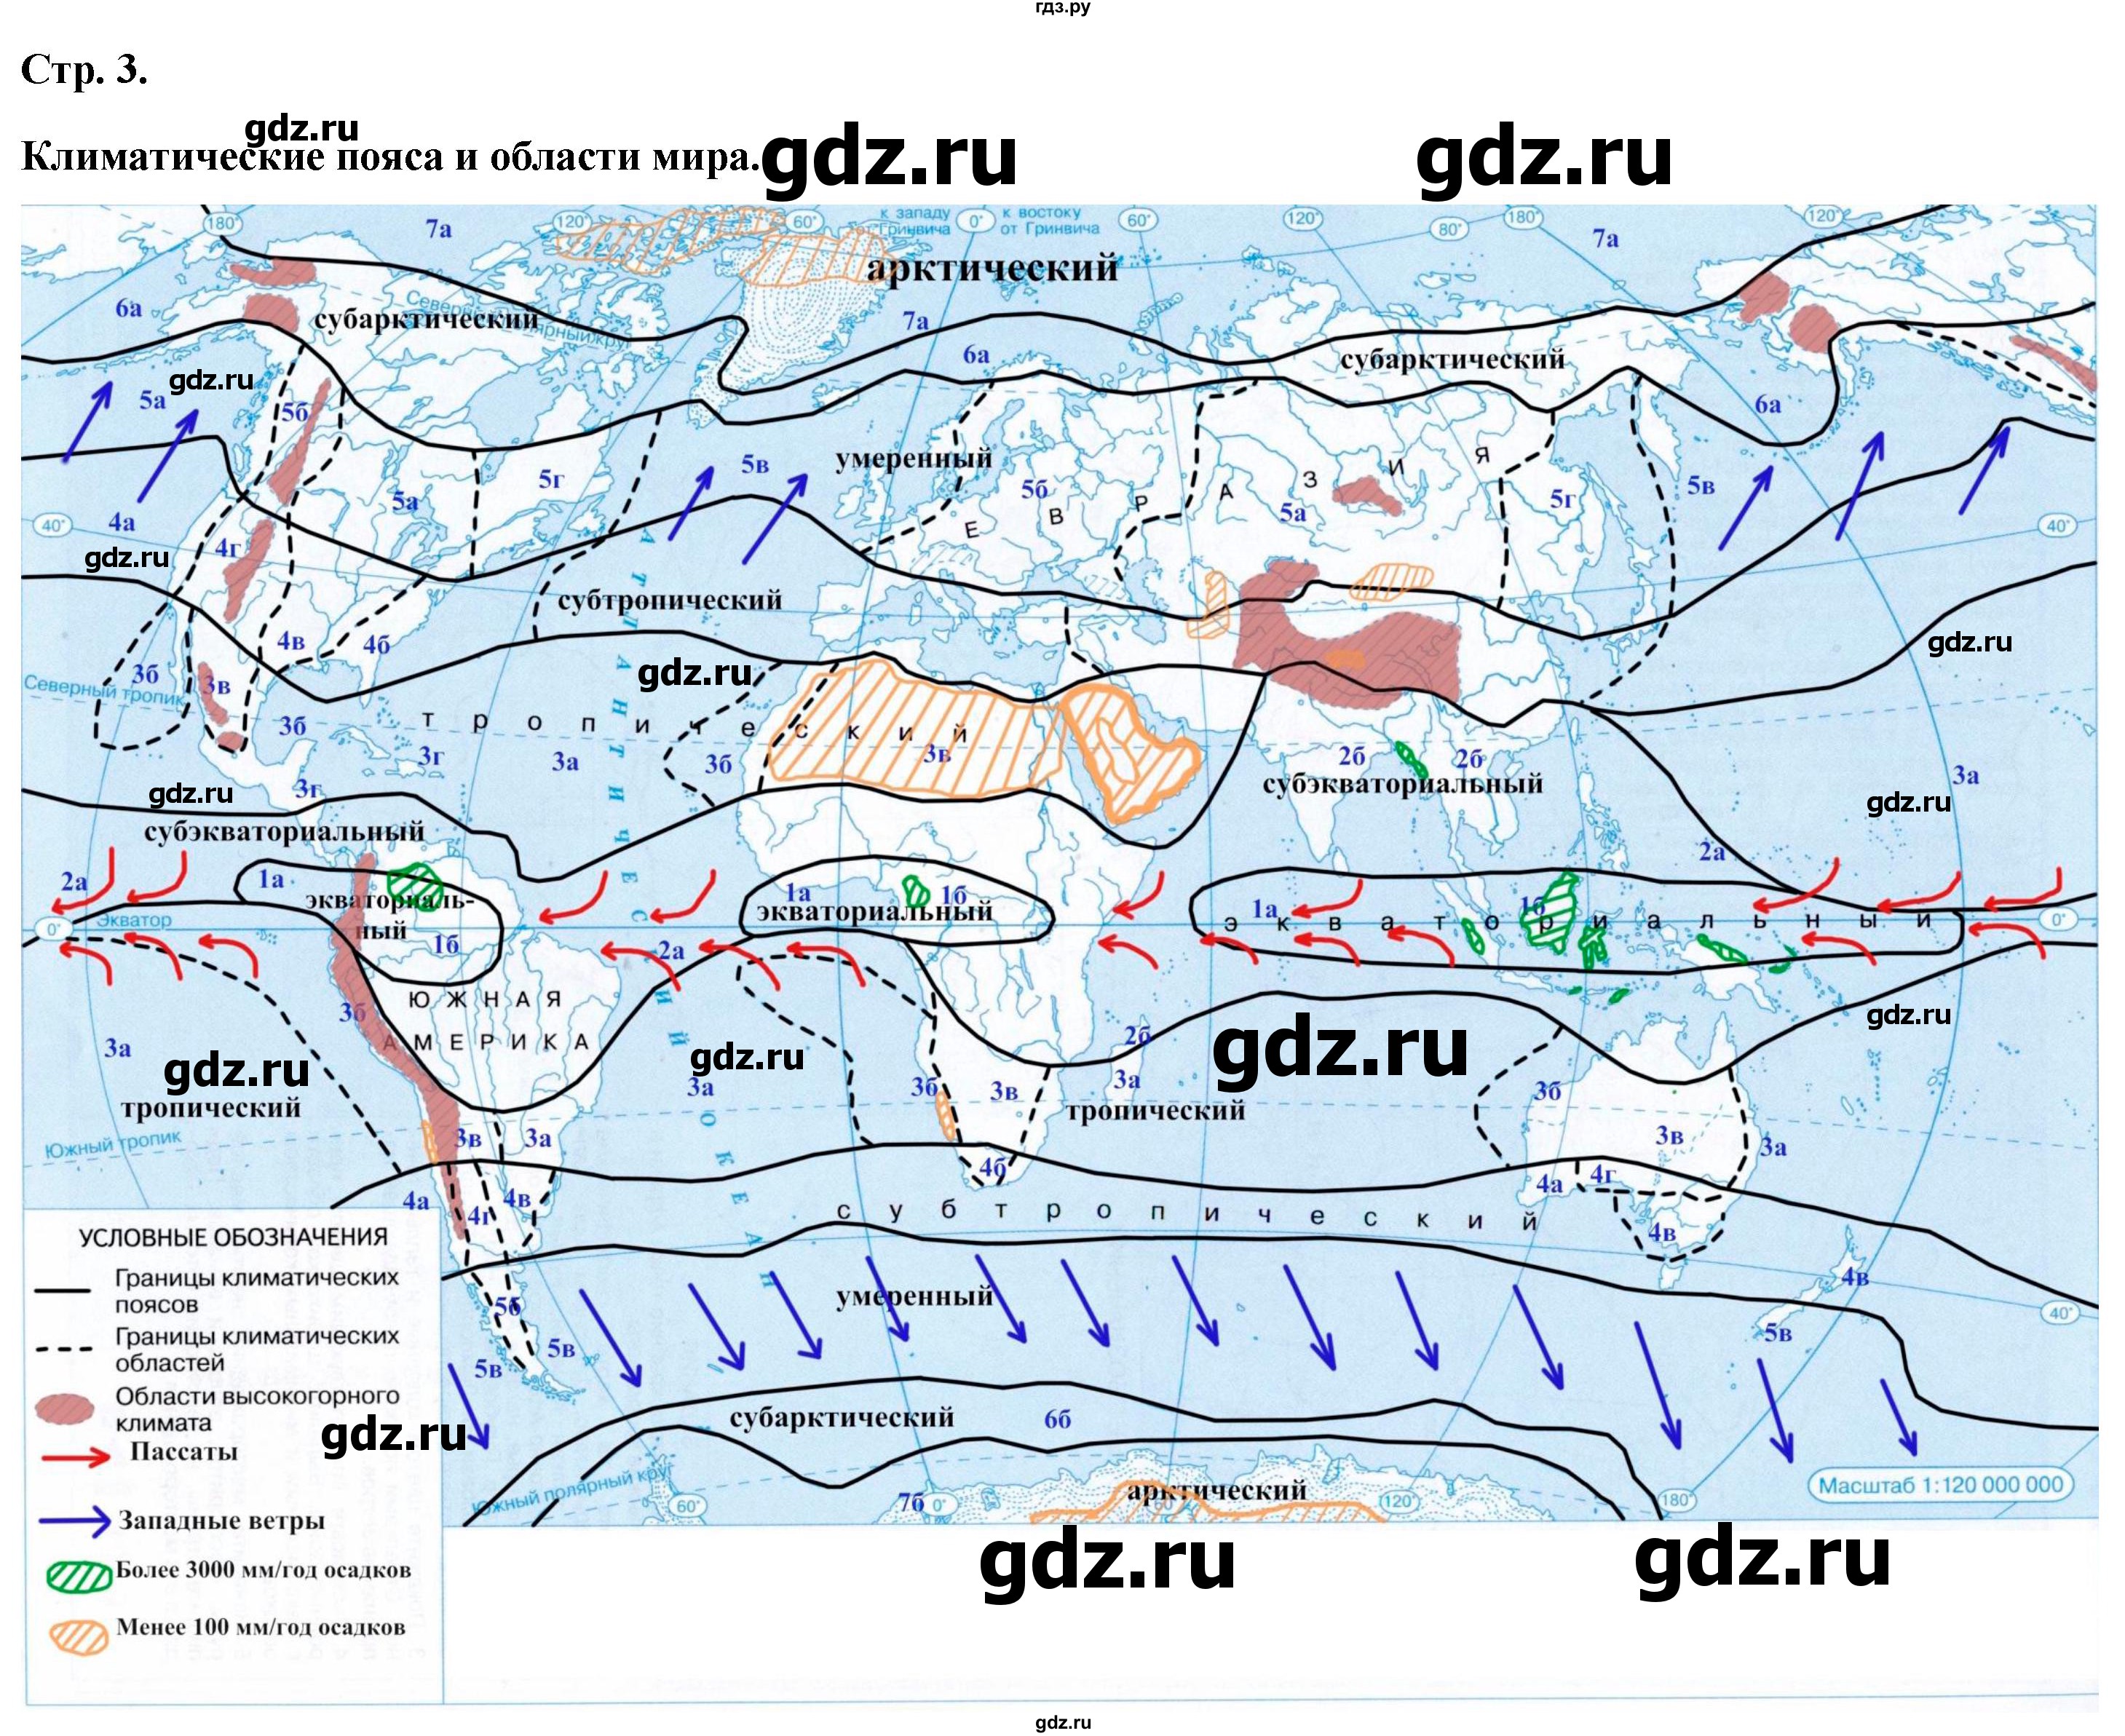 ГДЗ контурные карты стр.3 география 7 класс атлас с контурными картамиКурбский